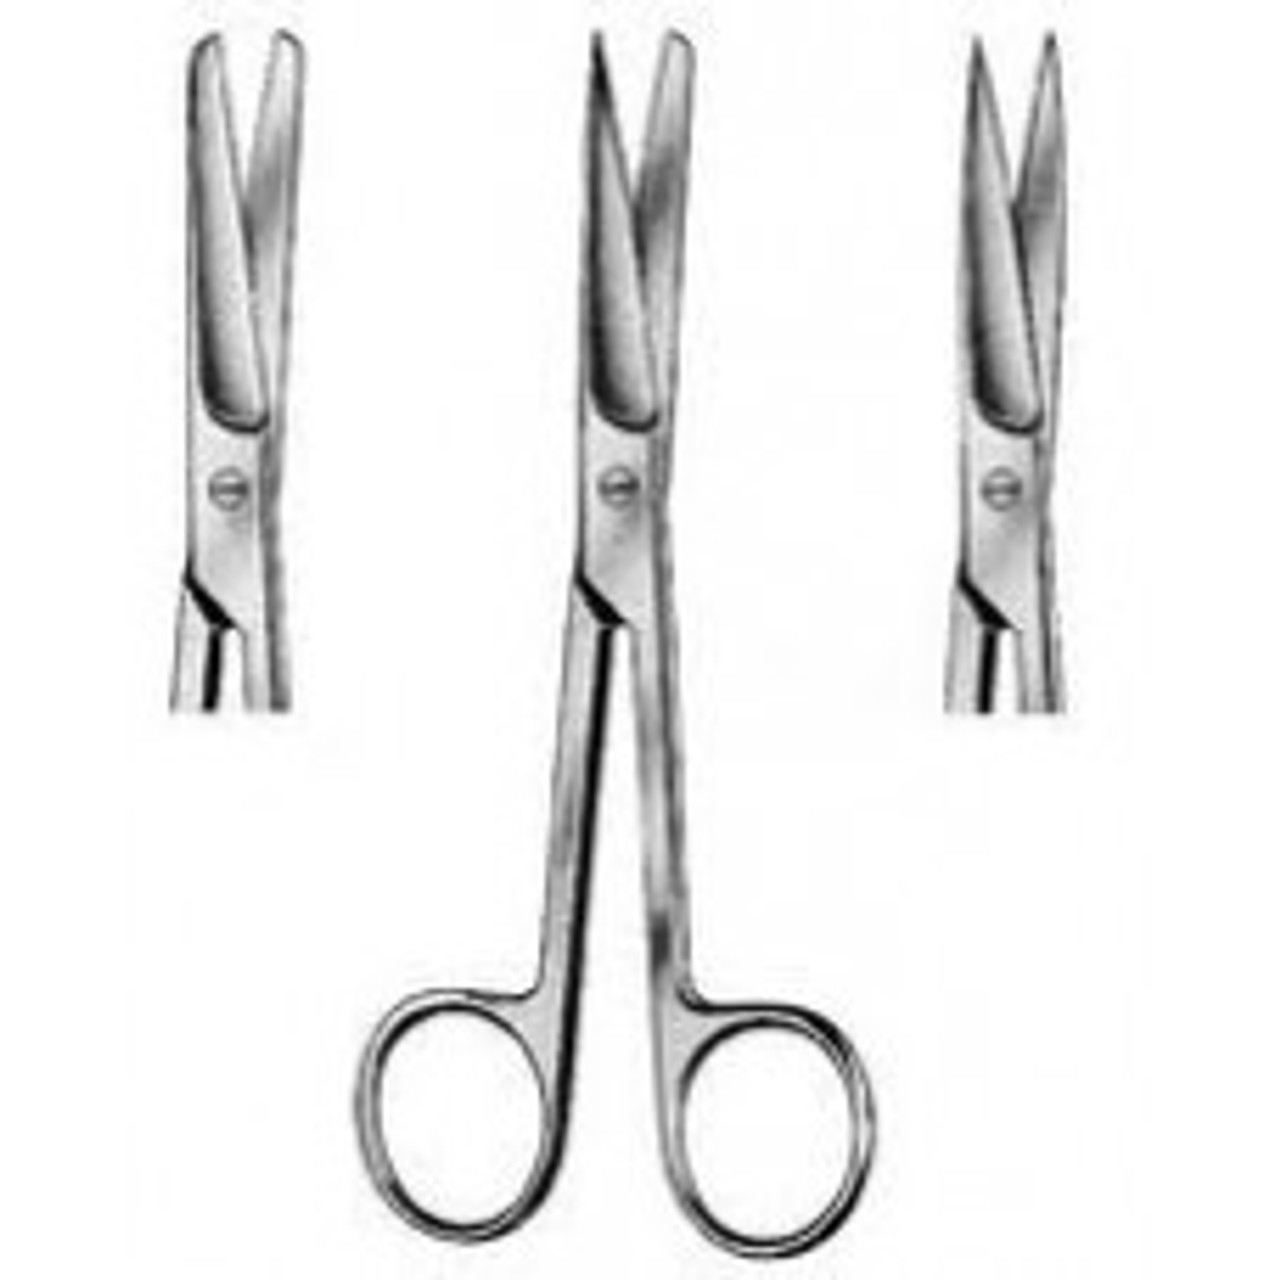 5.5 Inch Sharp Sharp Scissors